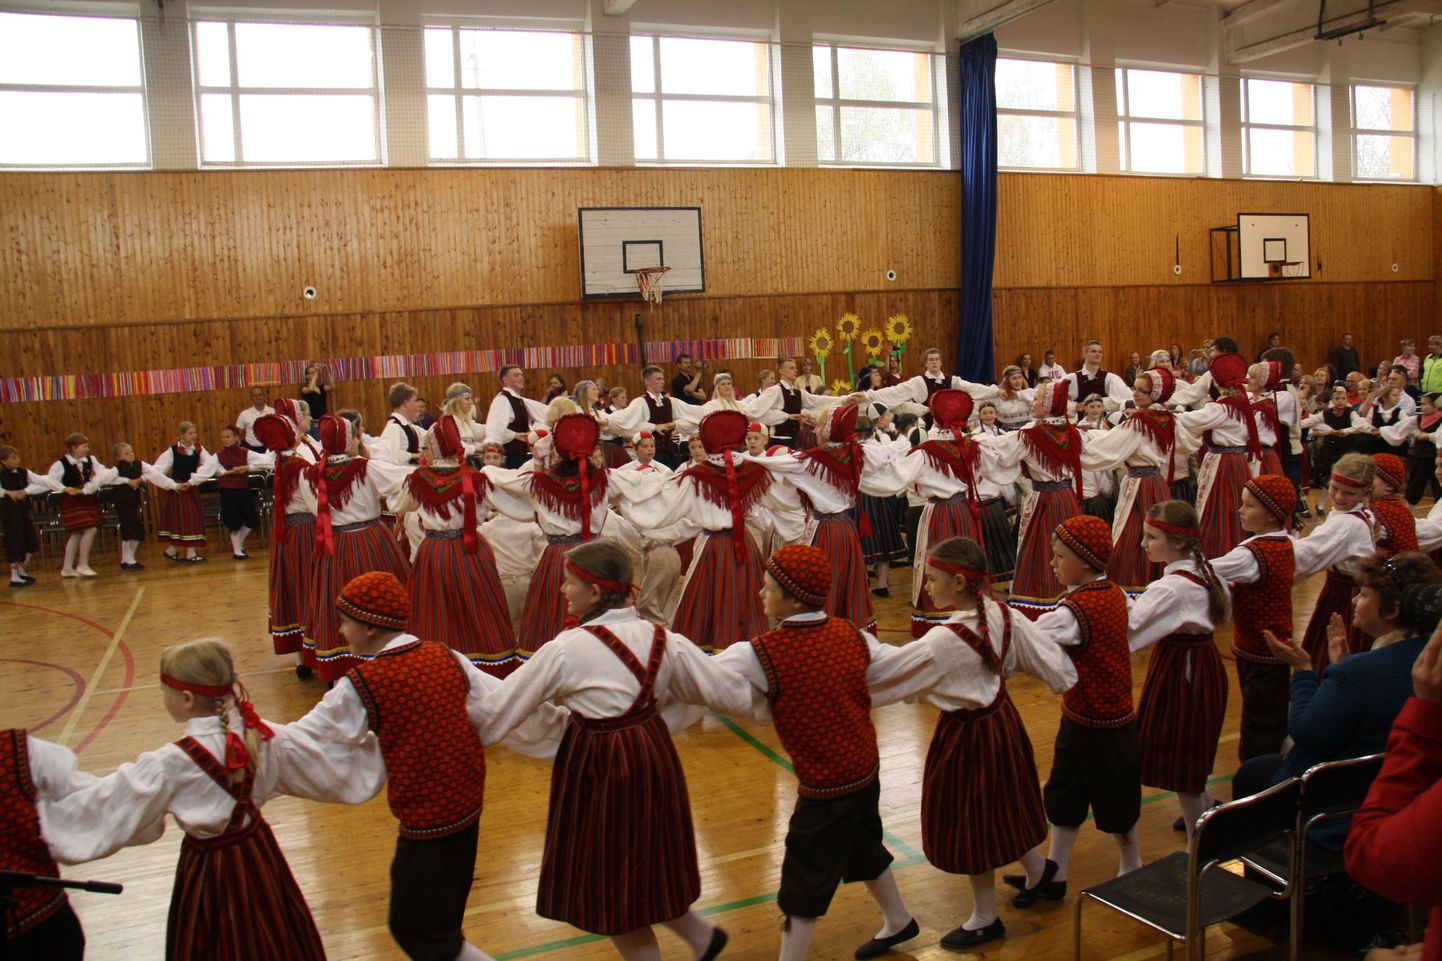 Juba teist aastat korraldas Pärnu ühisgümnaasium oma tantsupeo.